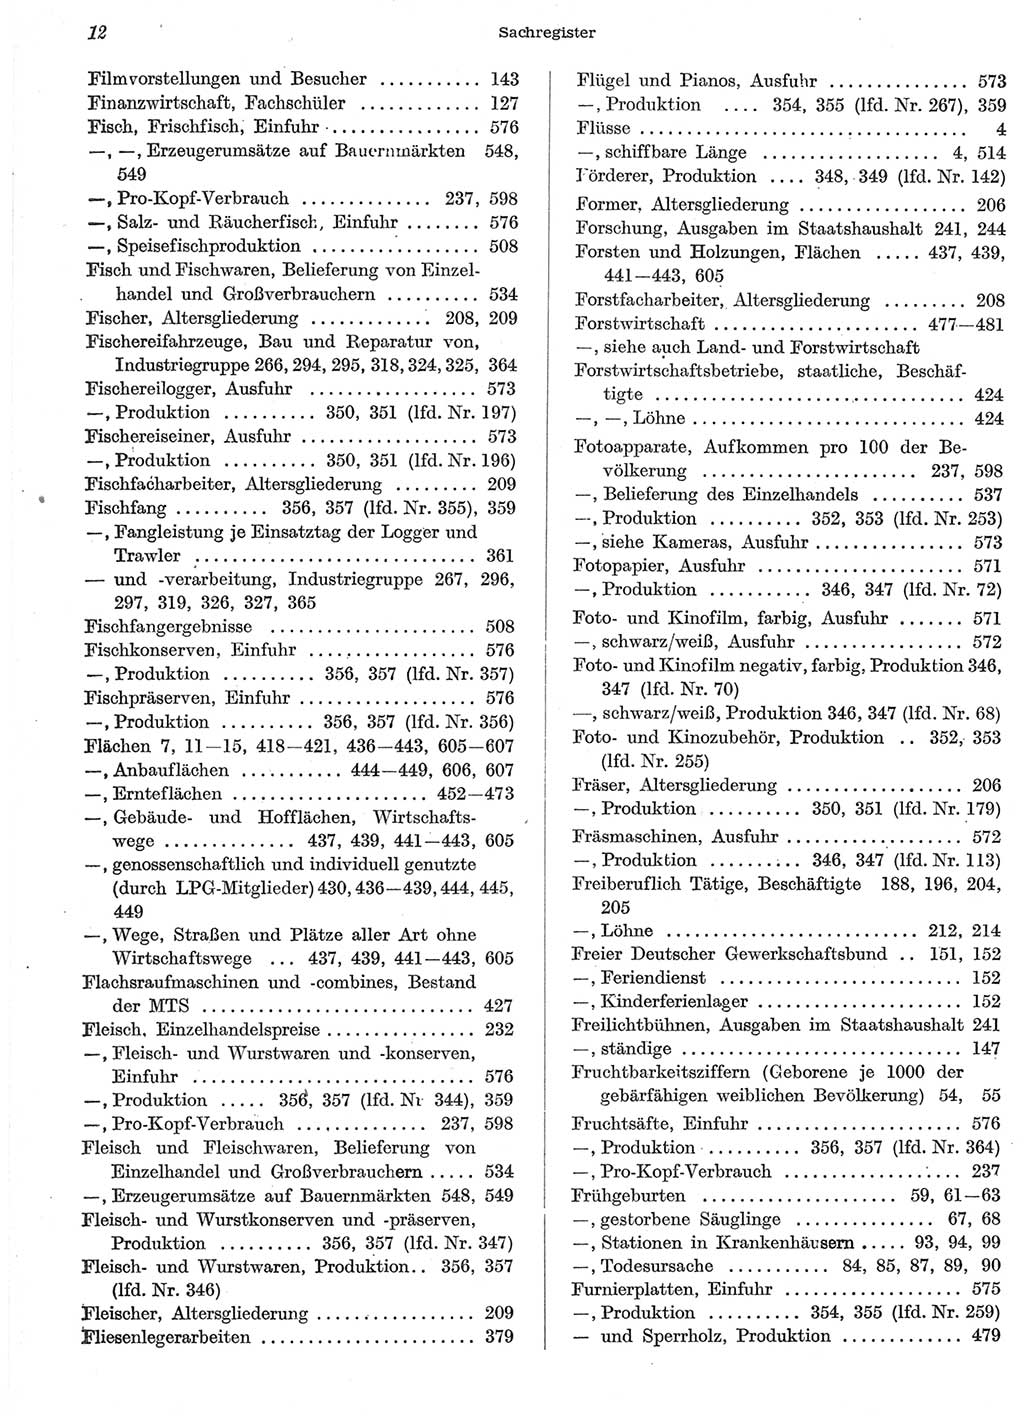 Statistisches Jahrbuch der Deutschen Demokratischen Republik (DDR) 1958, Seite 12 (Stat. Jb. DDR 1958, S. 12)